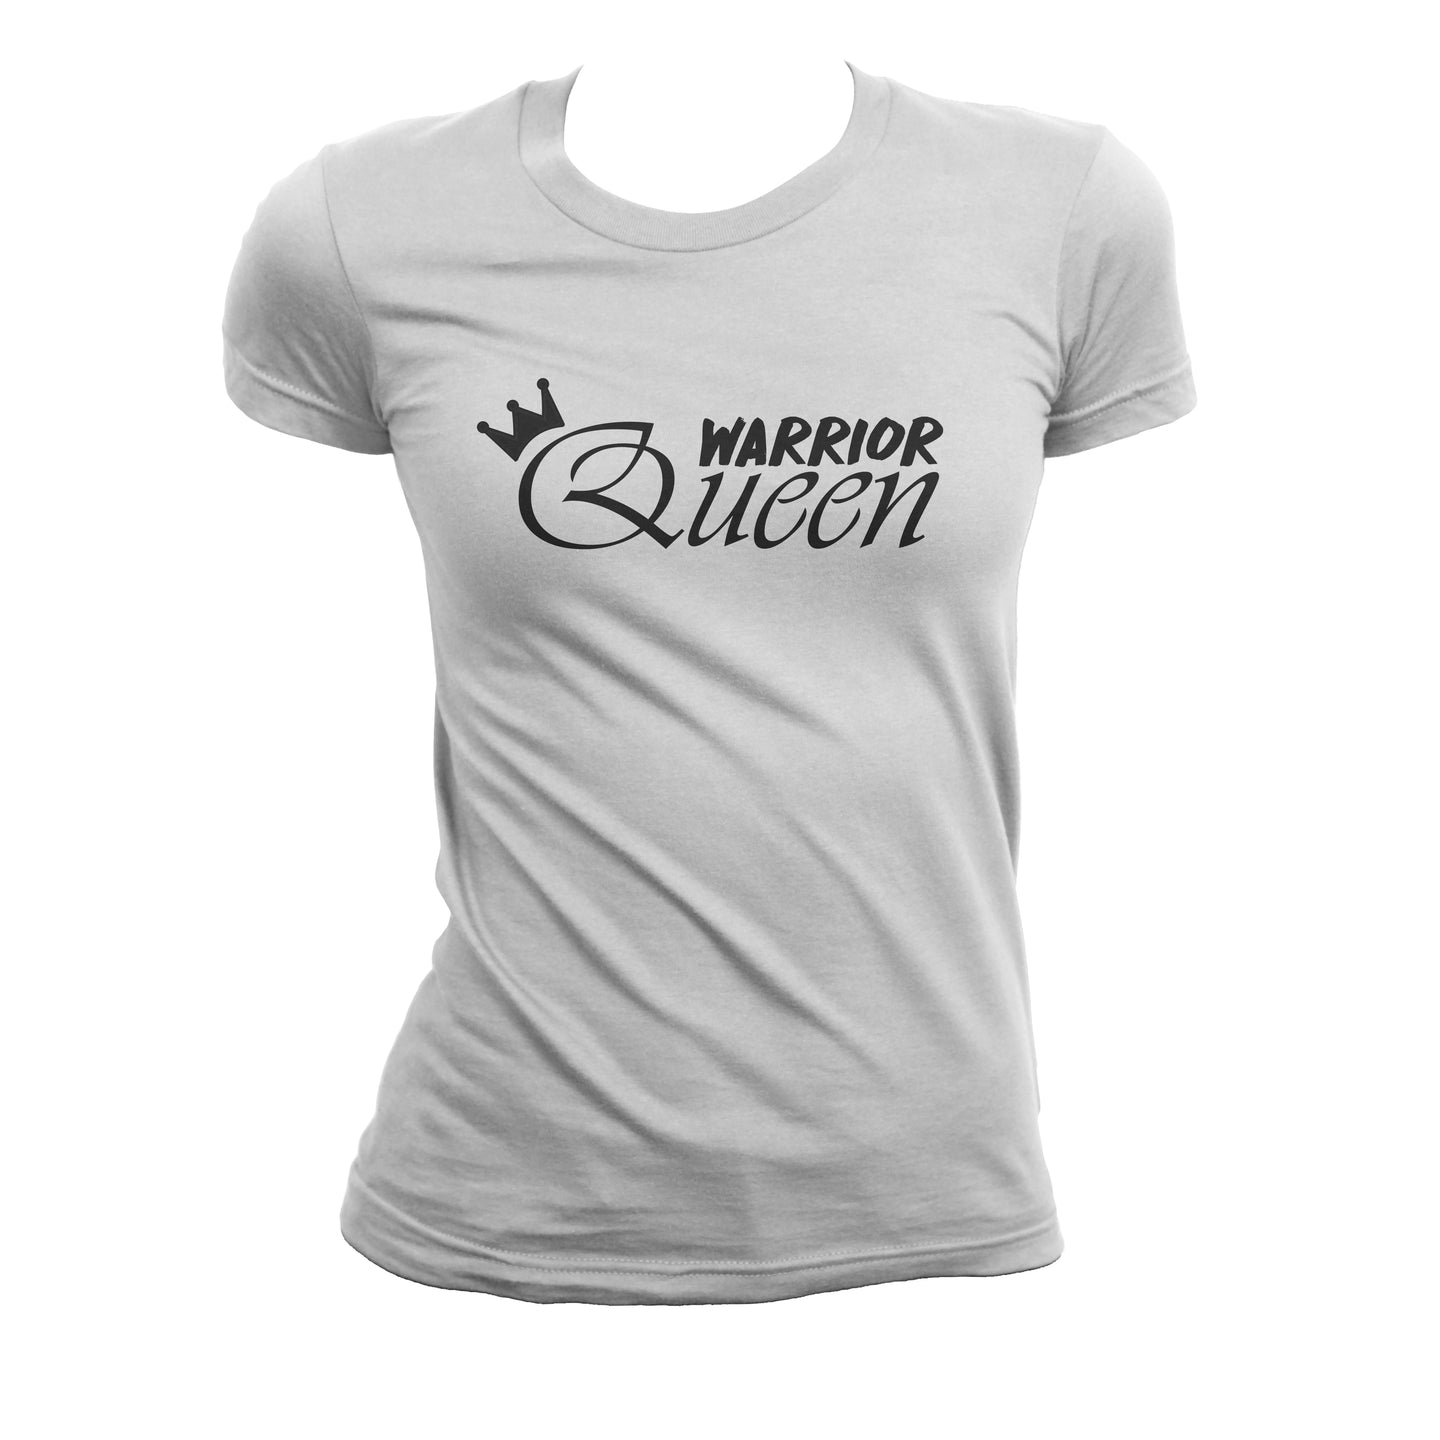 The Warrior Queen T-Shirt